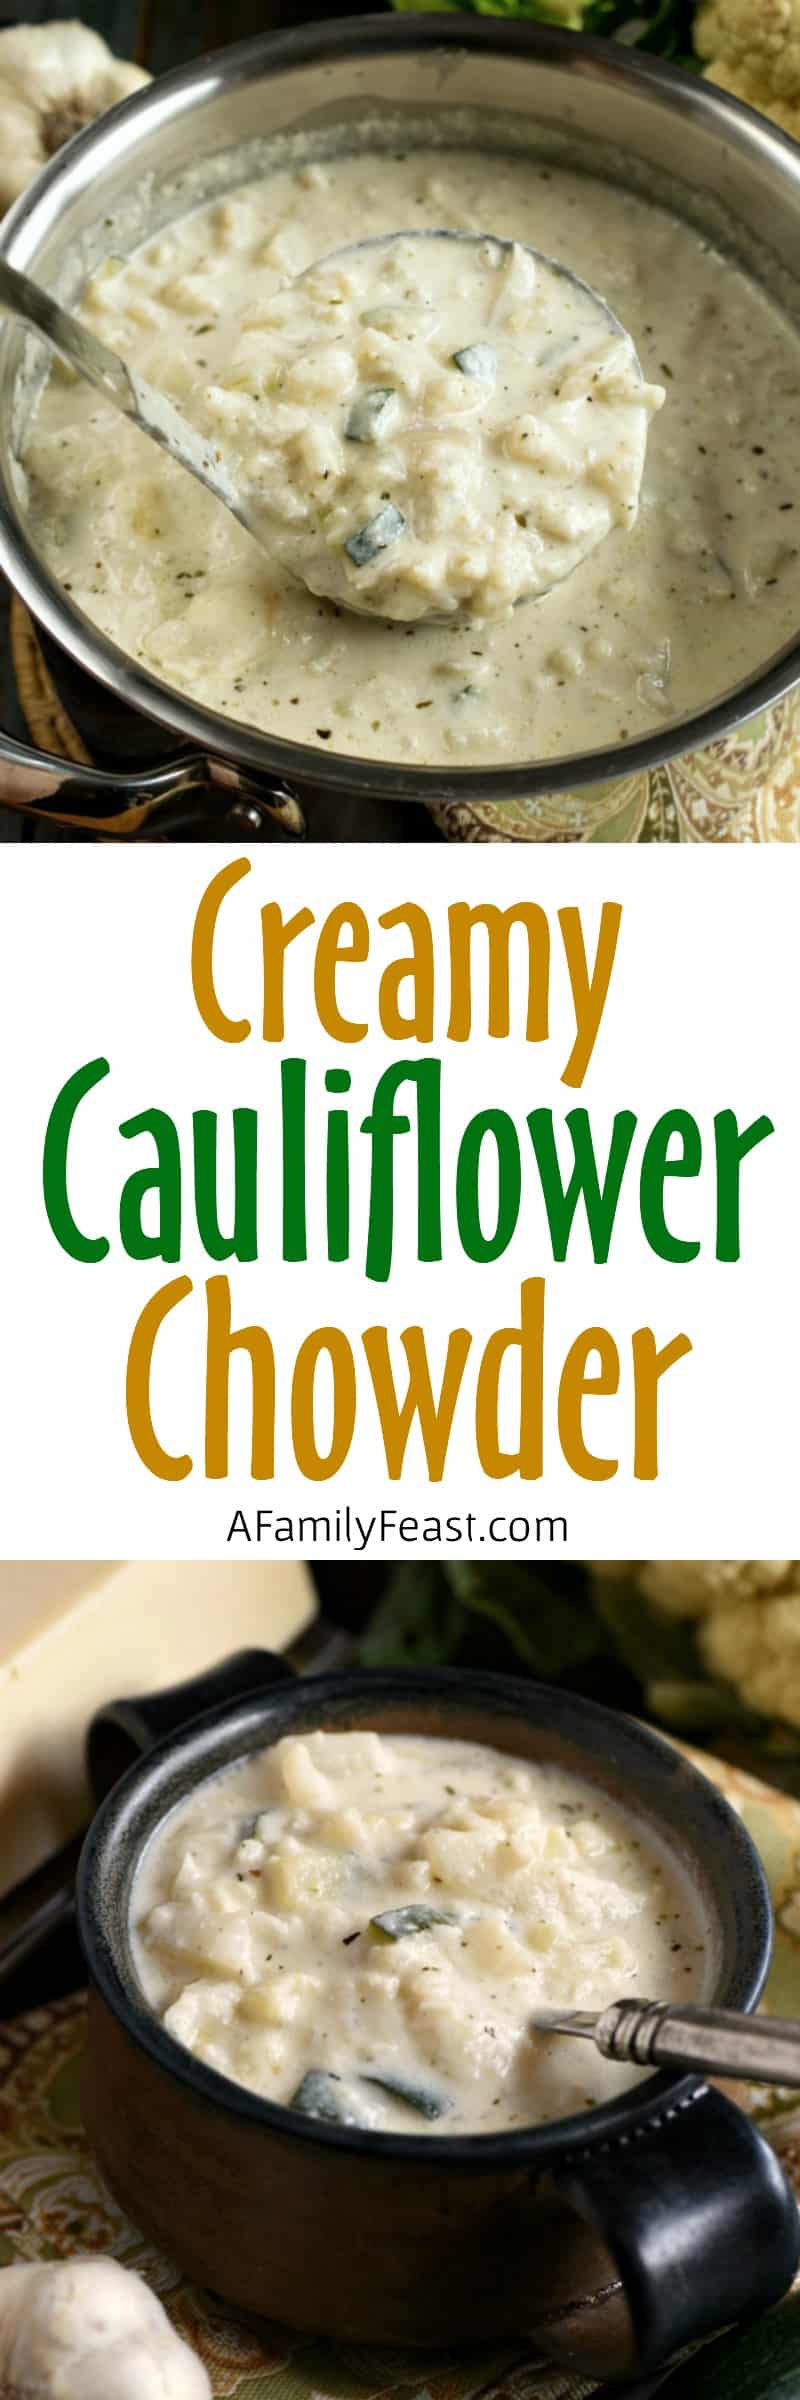 Creamy Cauliflower Chowder 